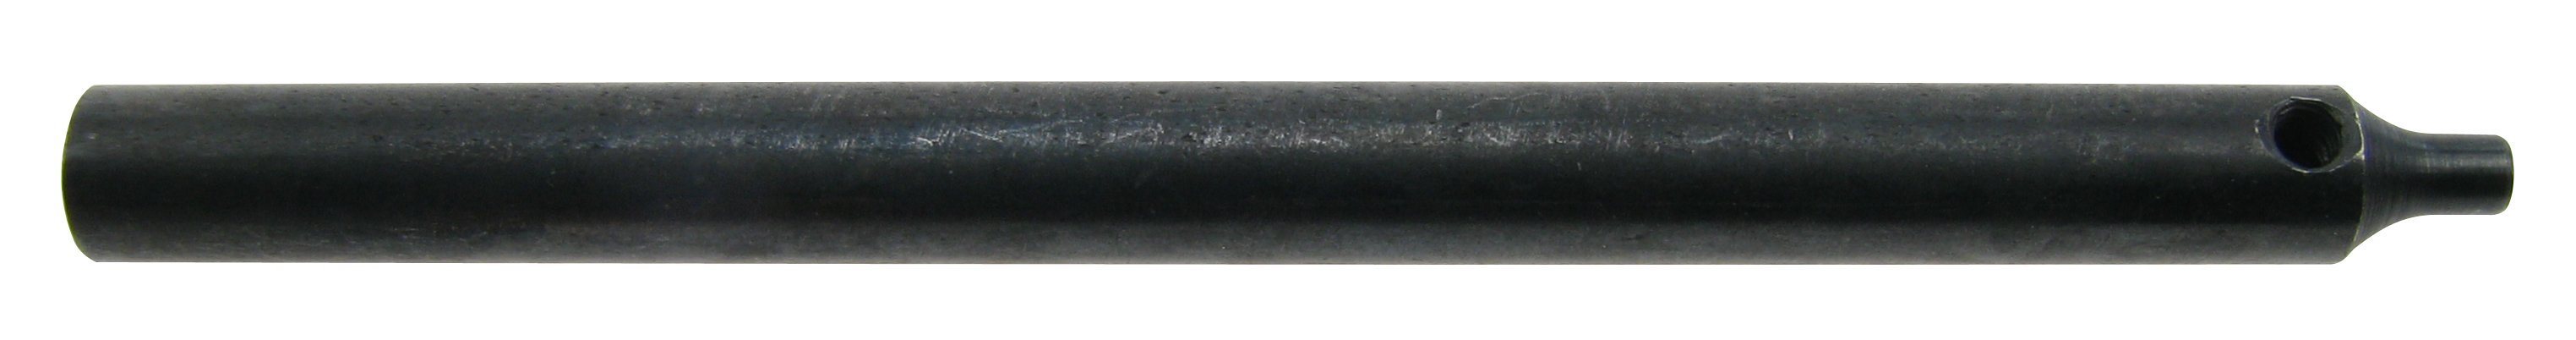 Dornhaltebrosche für Dorn 1,2 mm für Stiftentferner 4229120 Flume